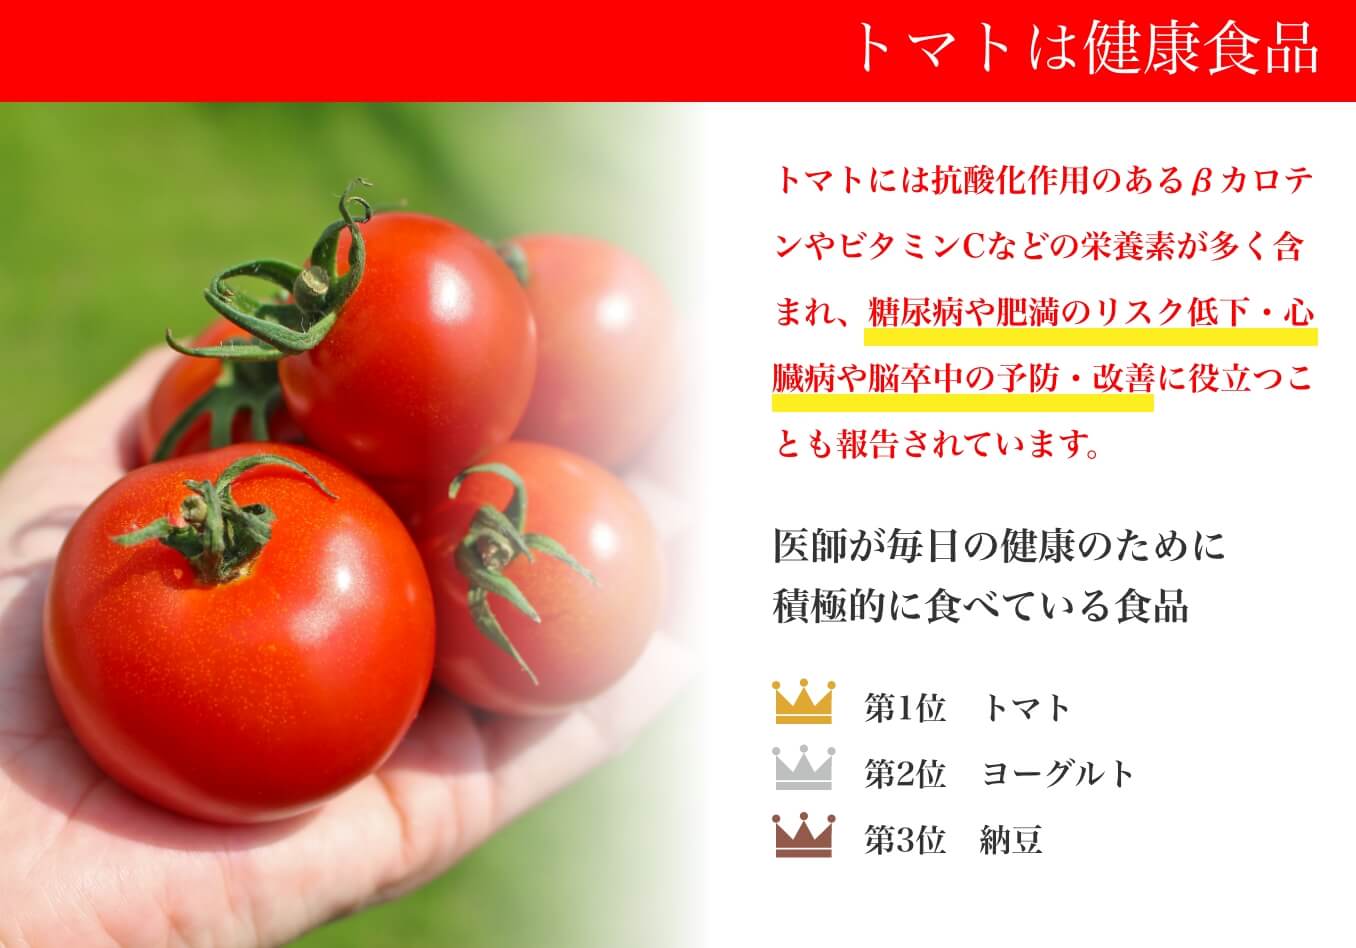 トマトは健康食品